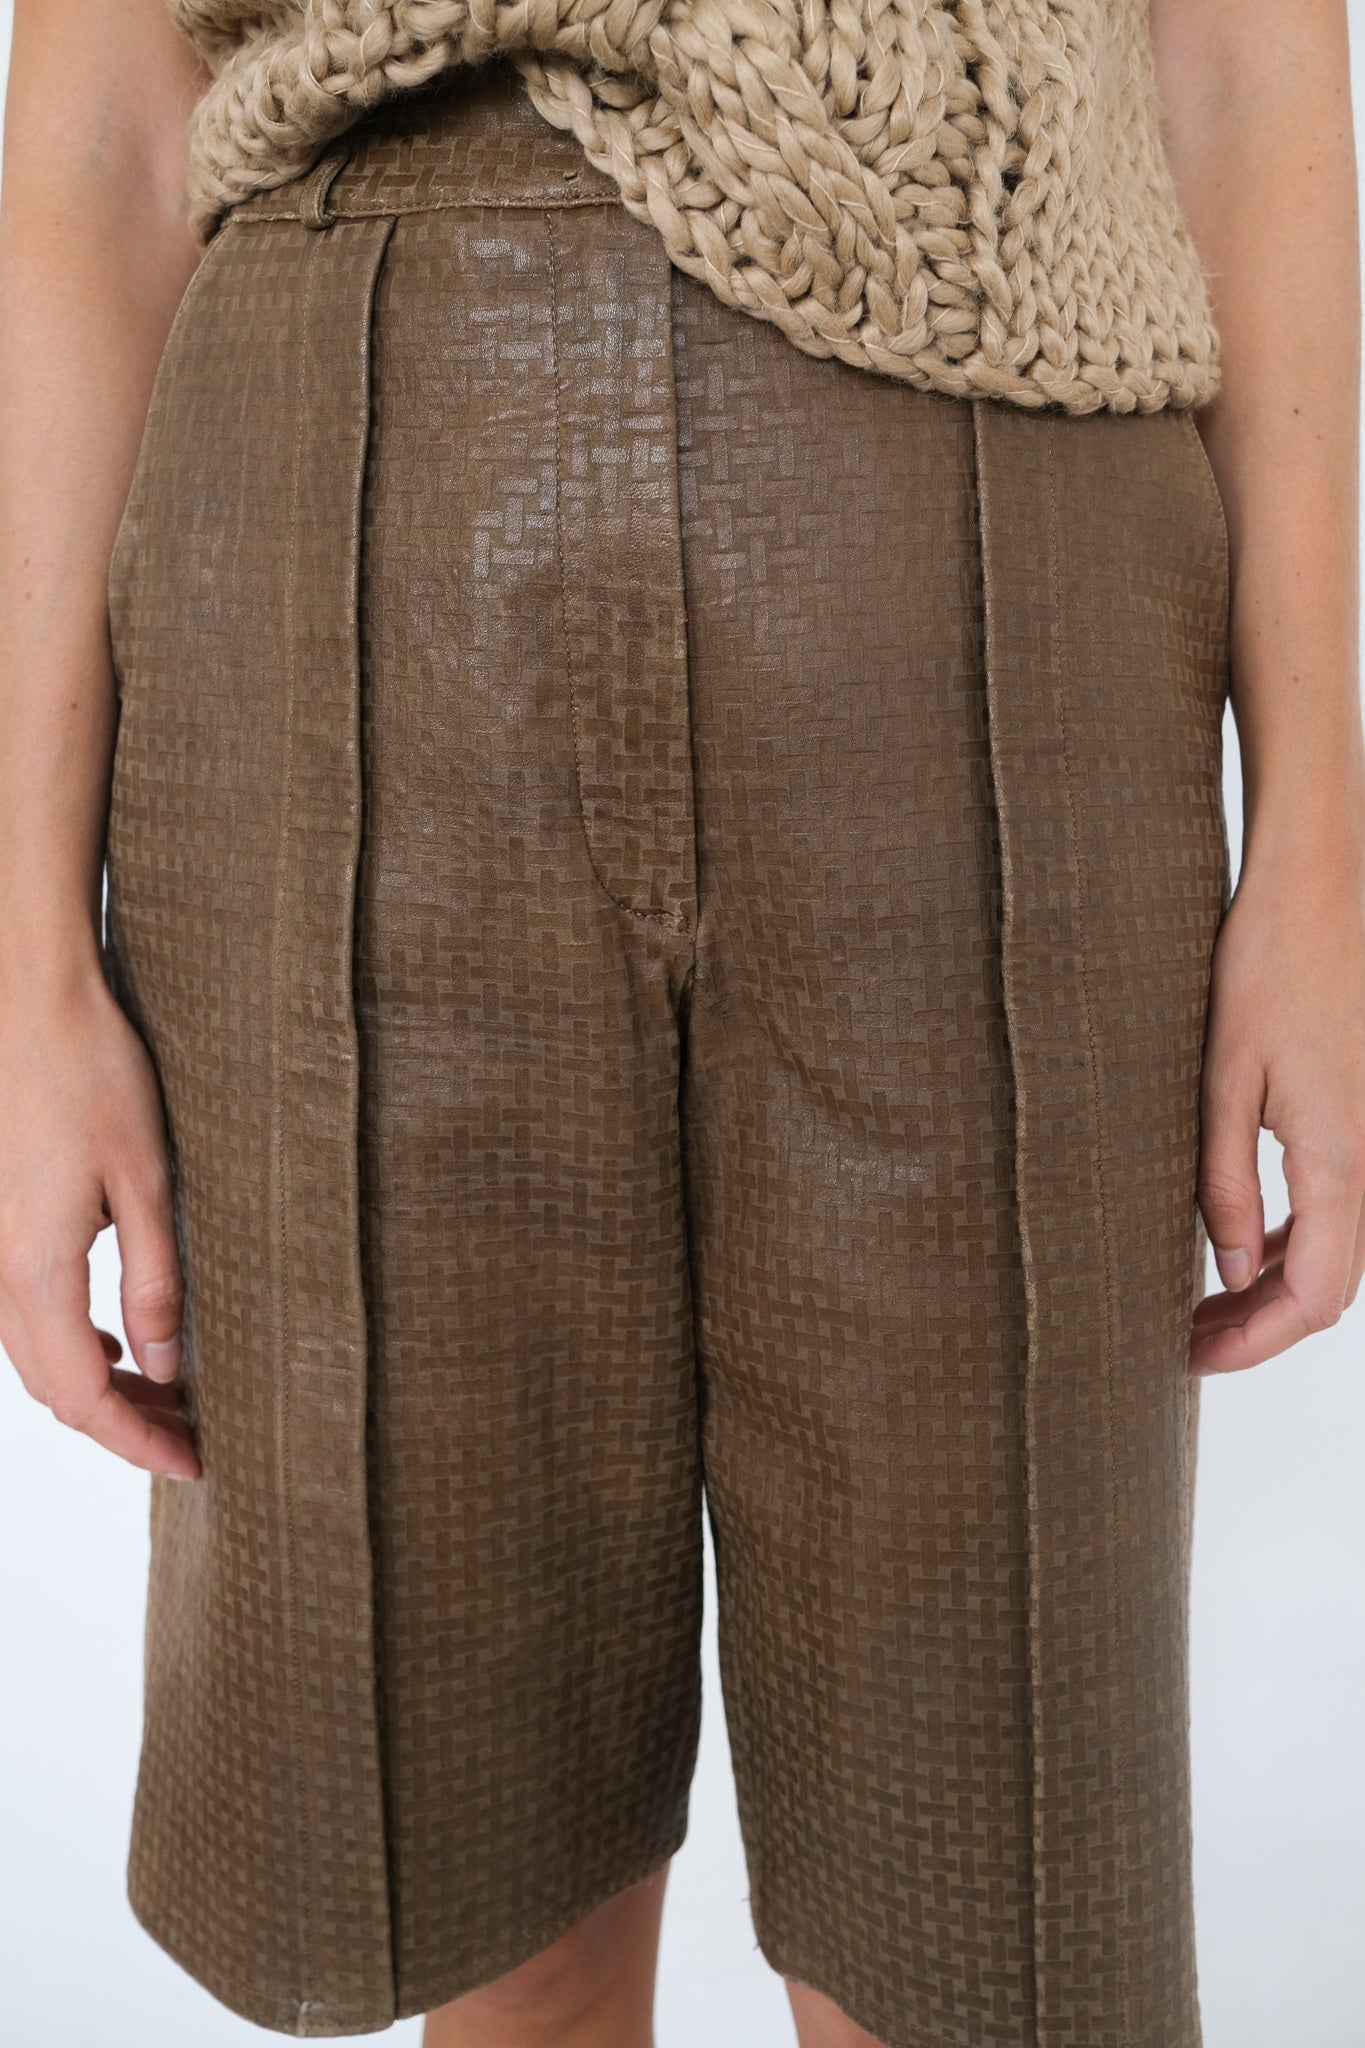 Giorgio Armani leather shorts